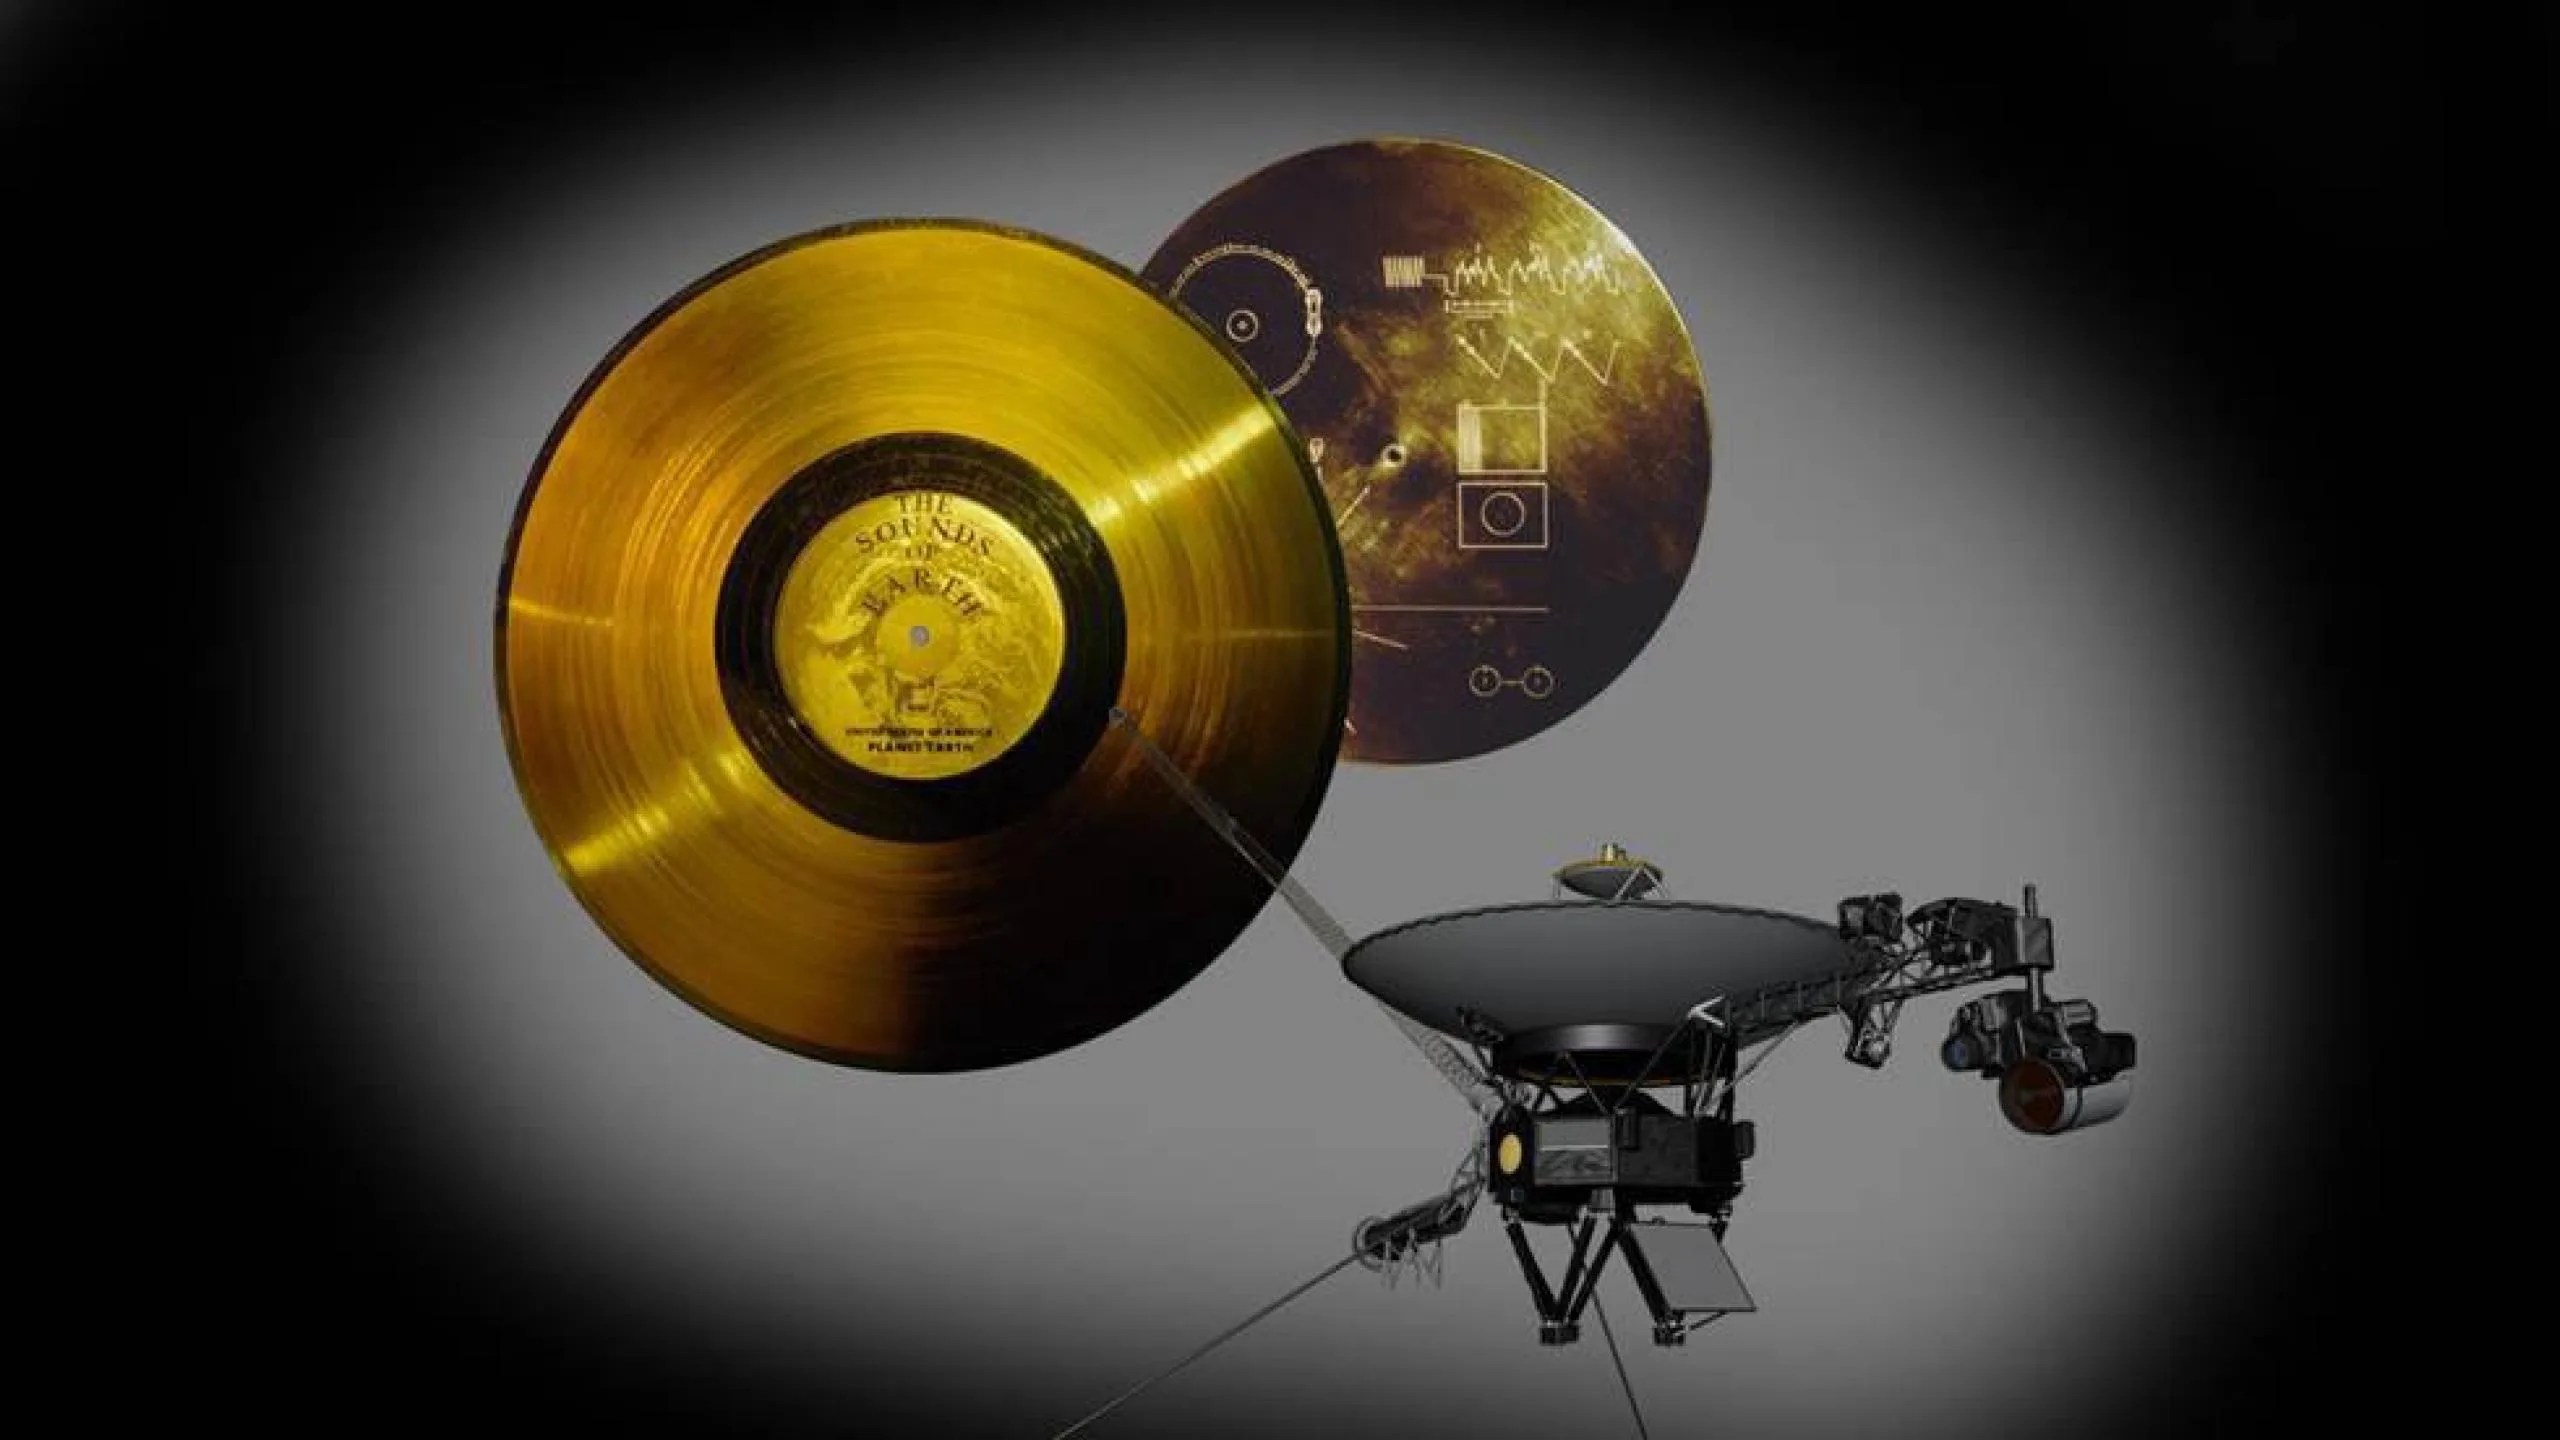 Esta imagen destaca la carga especial a bordo de las naves espaciales Voyager de la NASA: el Disco de Oro. Cada una de las dos naves espaciales Voyager lanzadas en 1977 lleva un disco fonográfico de 30,5 centímetros (12 pulgadas) chapado en oro con imágenes y sonidos de la Tierra. Créditos: NASA / JPL-Caltech